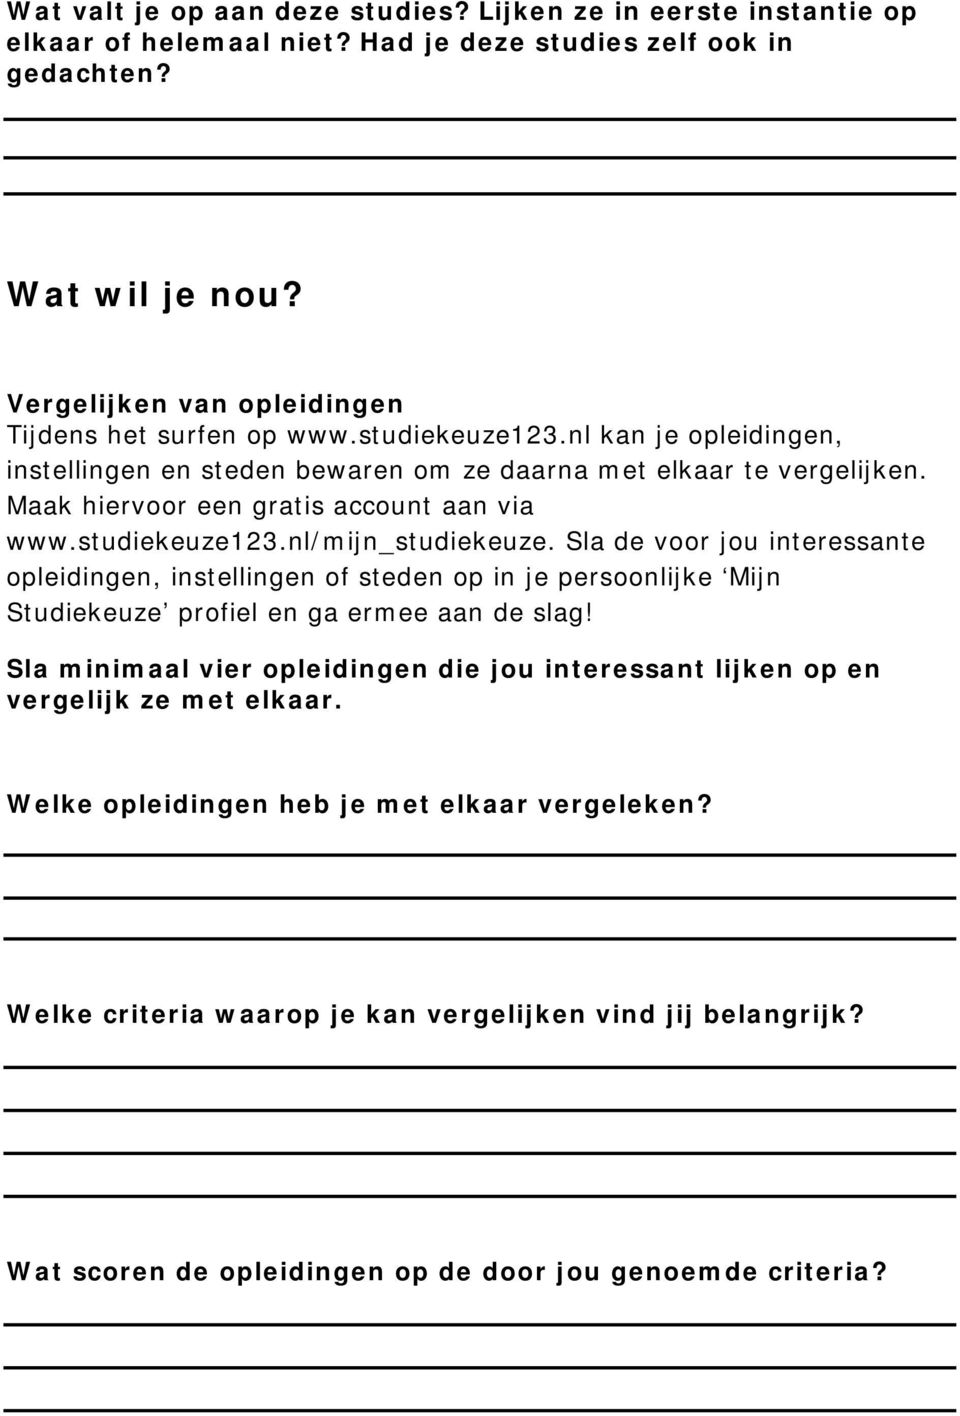 Maak hiervoor een gratis account aan via www.studiekeuze123.nl/mijn_studiekeuze.